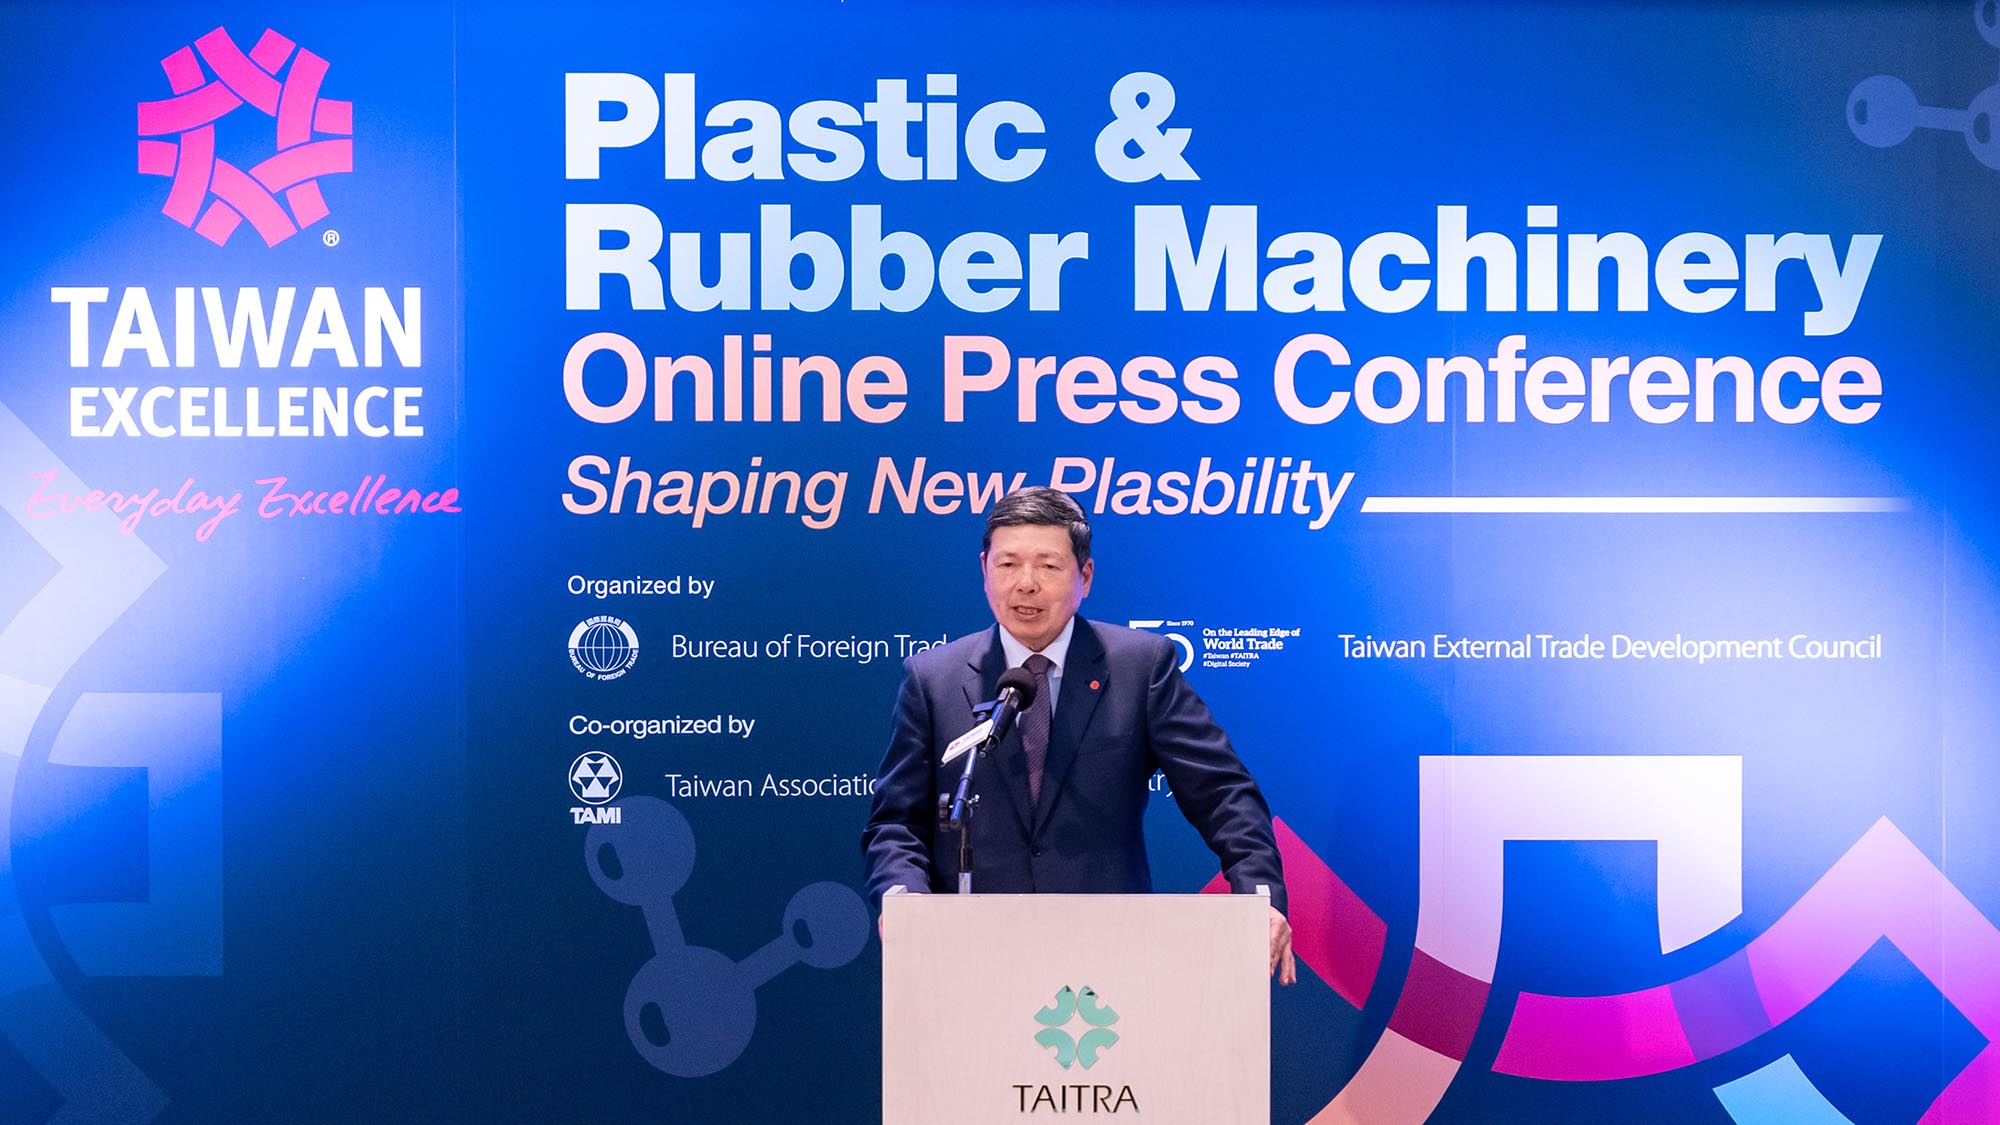 Taiwan Excellence giới thiệu máy móc tiên tiến giúp gia tăng năng suất & thân thiện với môi trường trong sản xuất nhựa và cao su